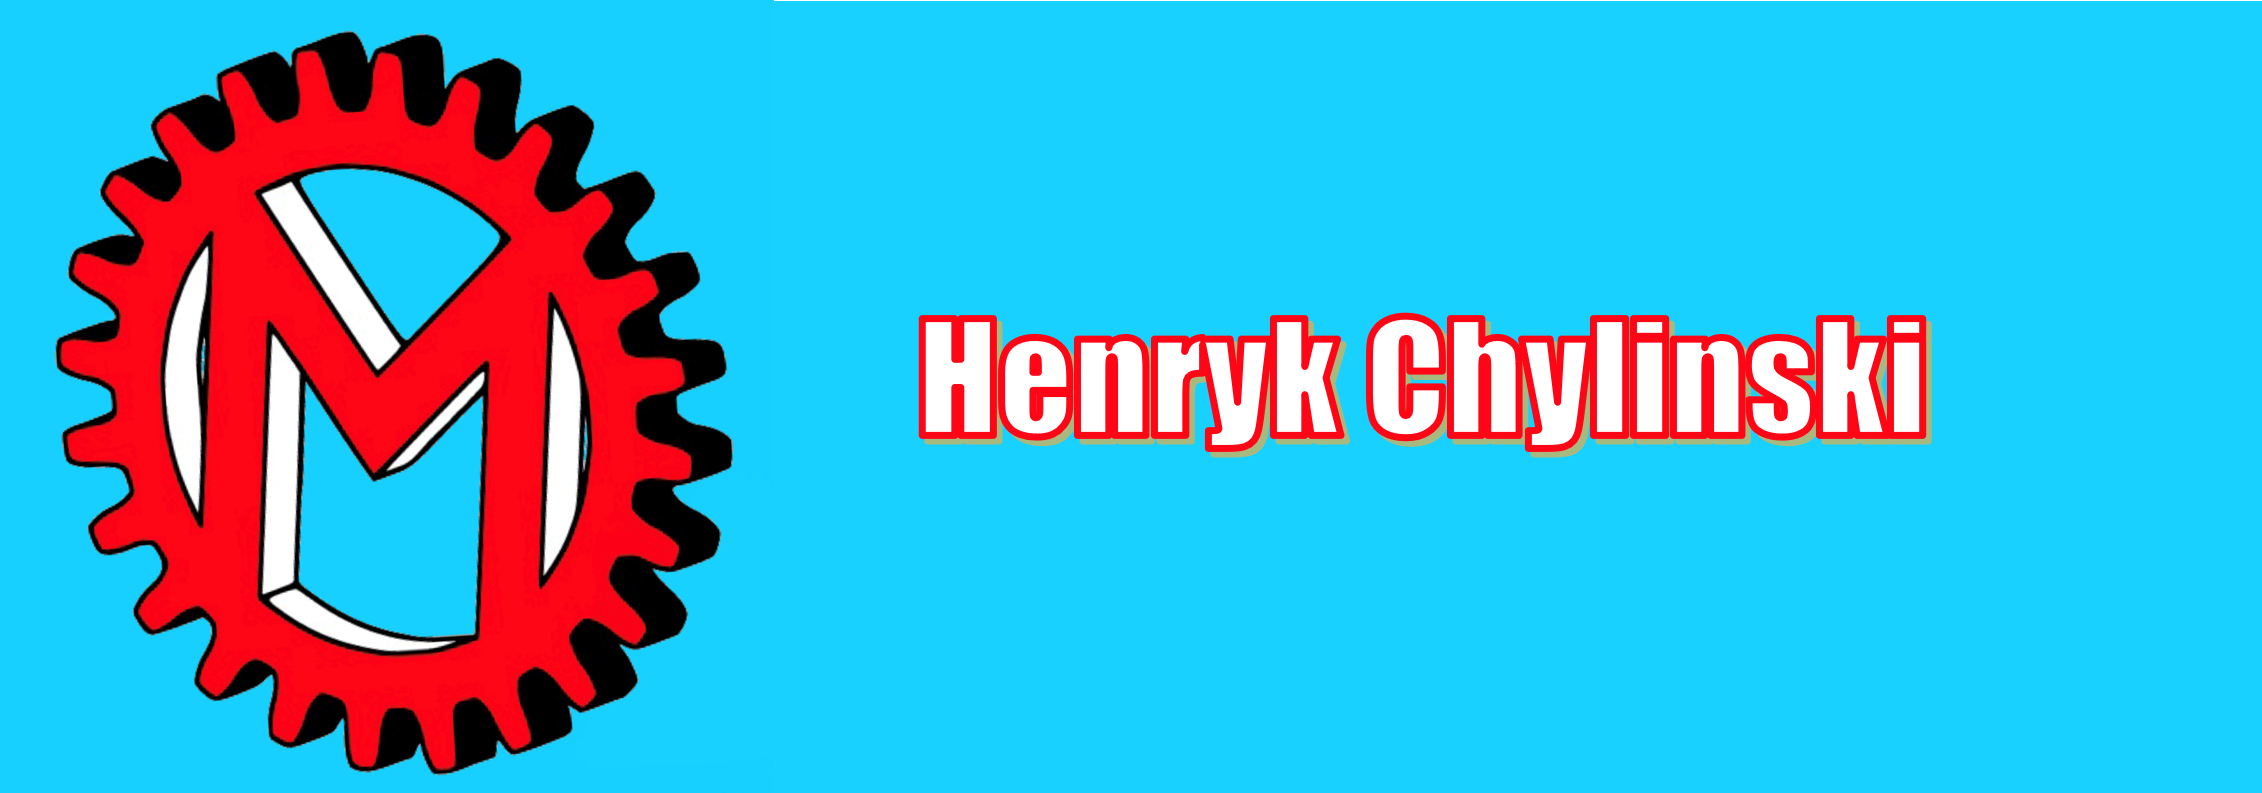 Henryk Chylinski